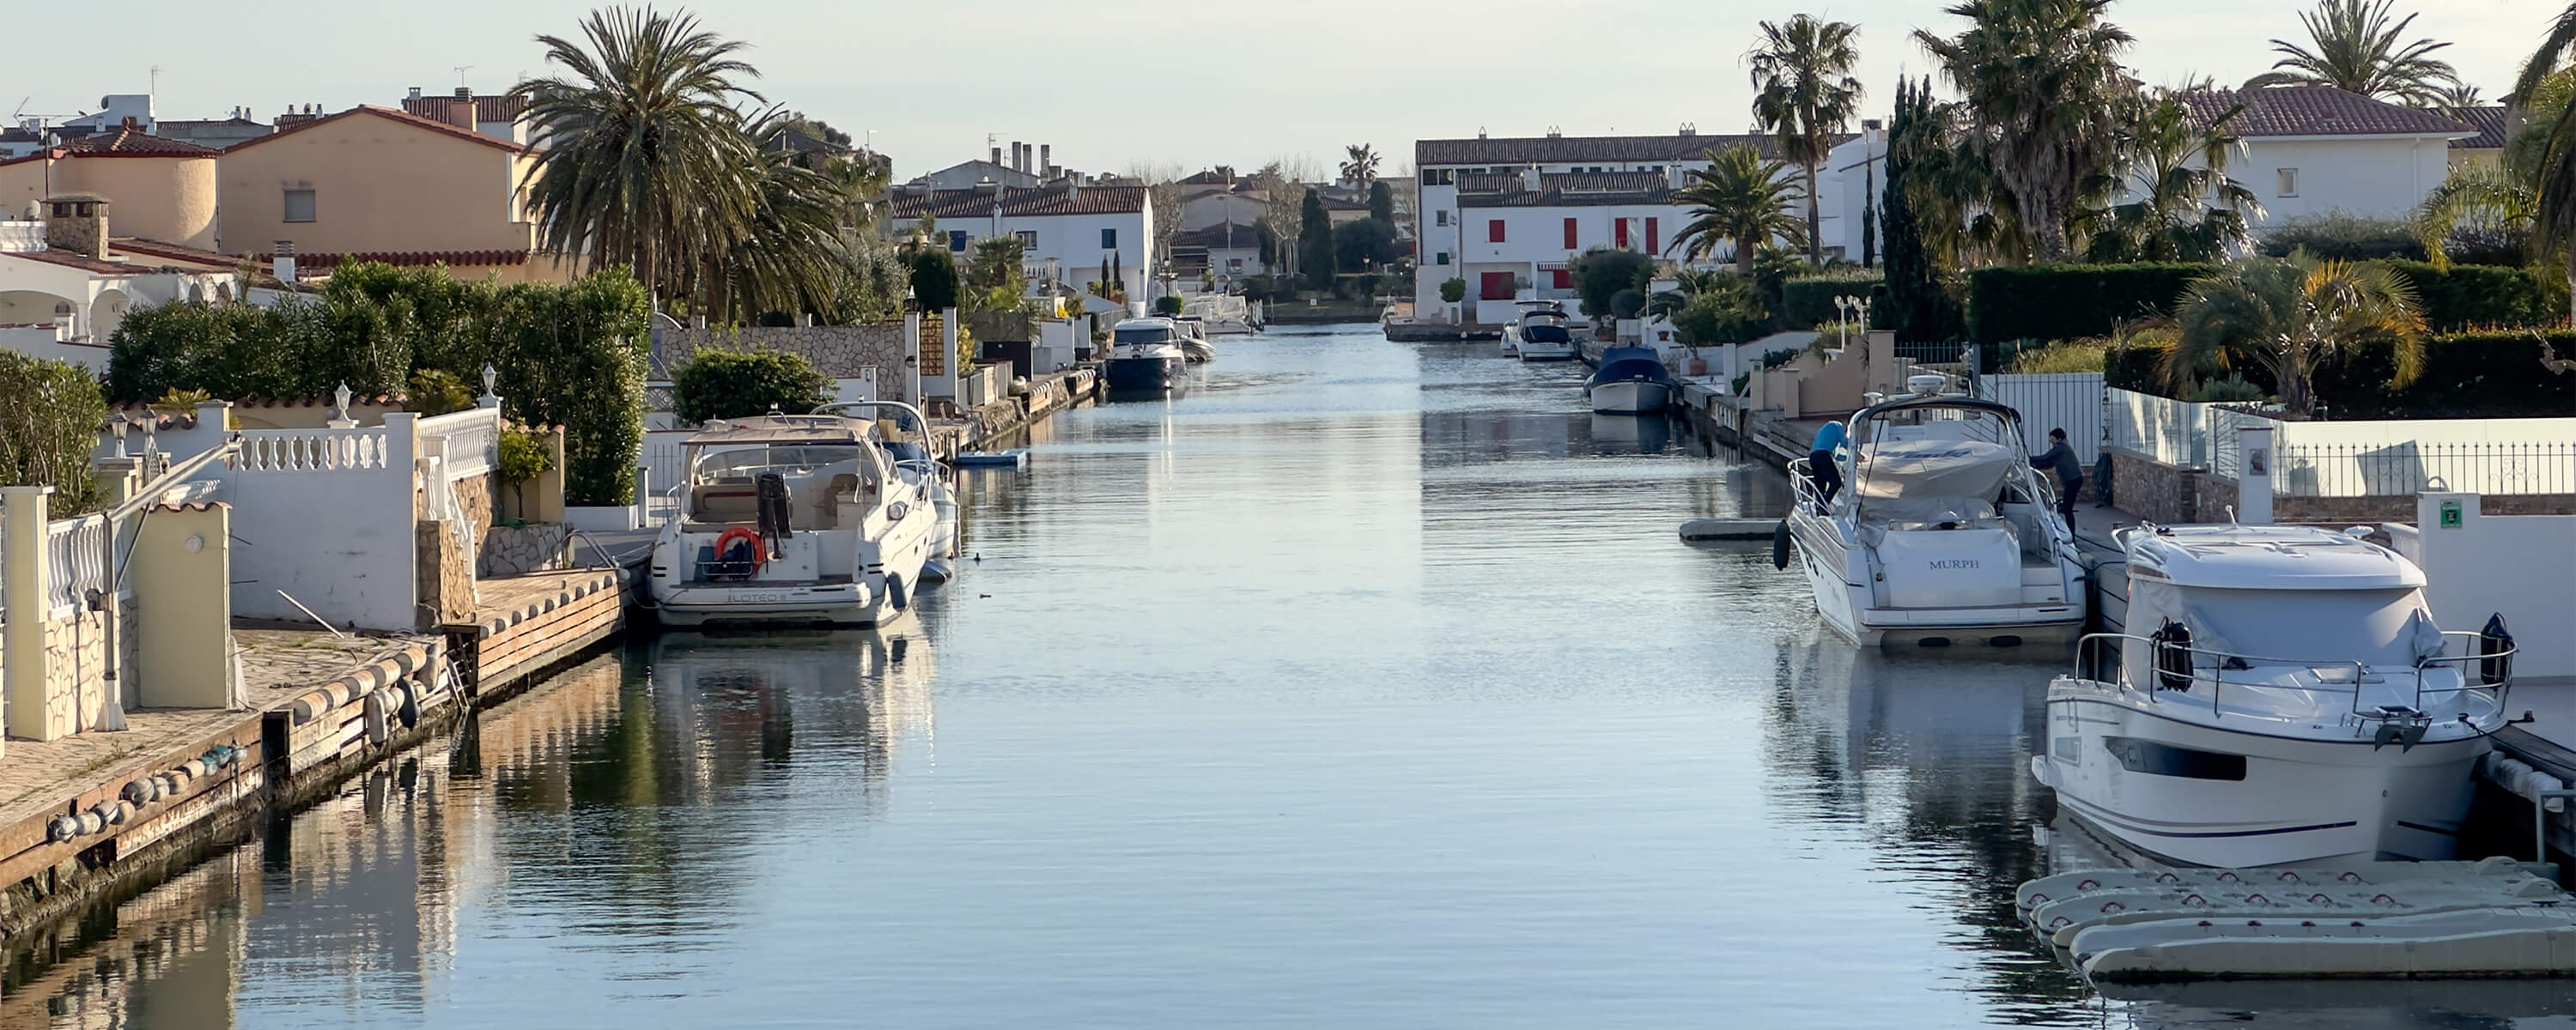 Ein breiter Wasserkanal in einer spanischen Stadt am Meer. Mehrere Boote an privaten Anliege-Stegen.